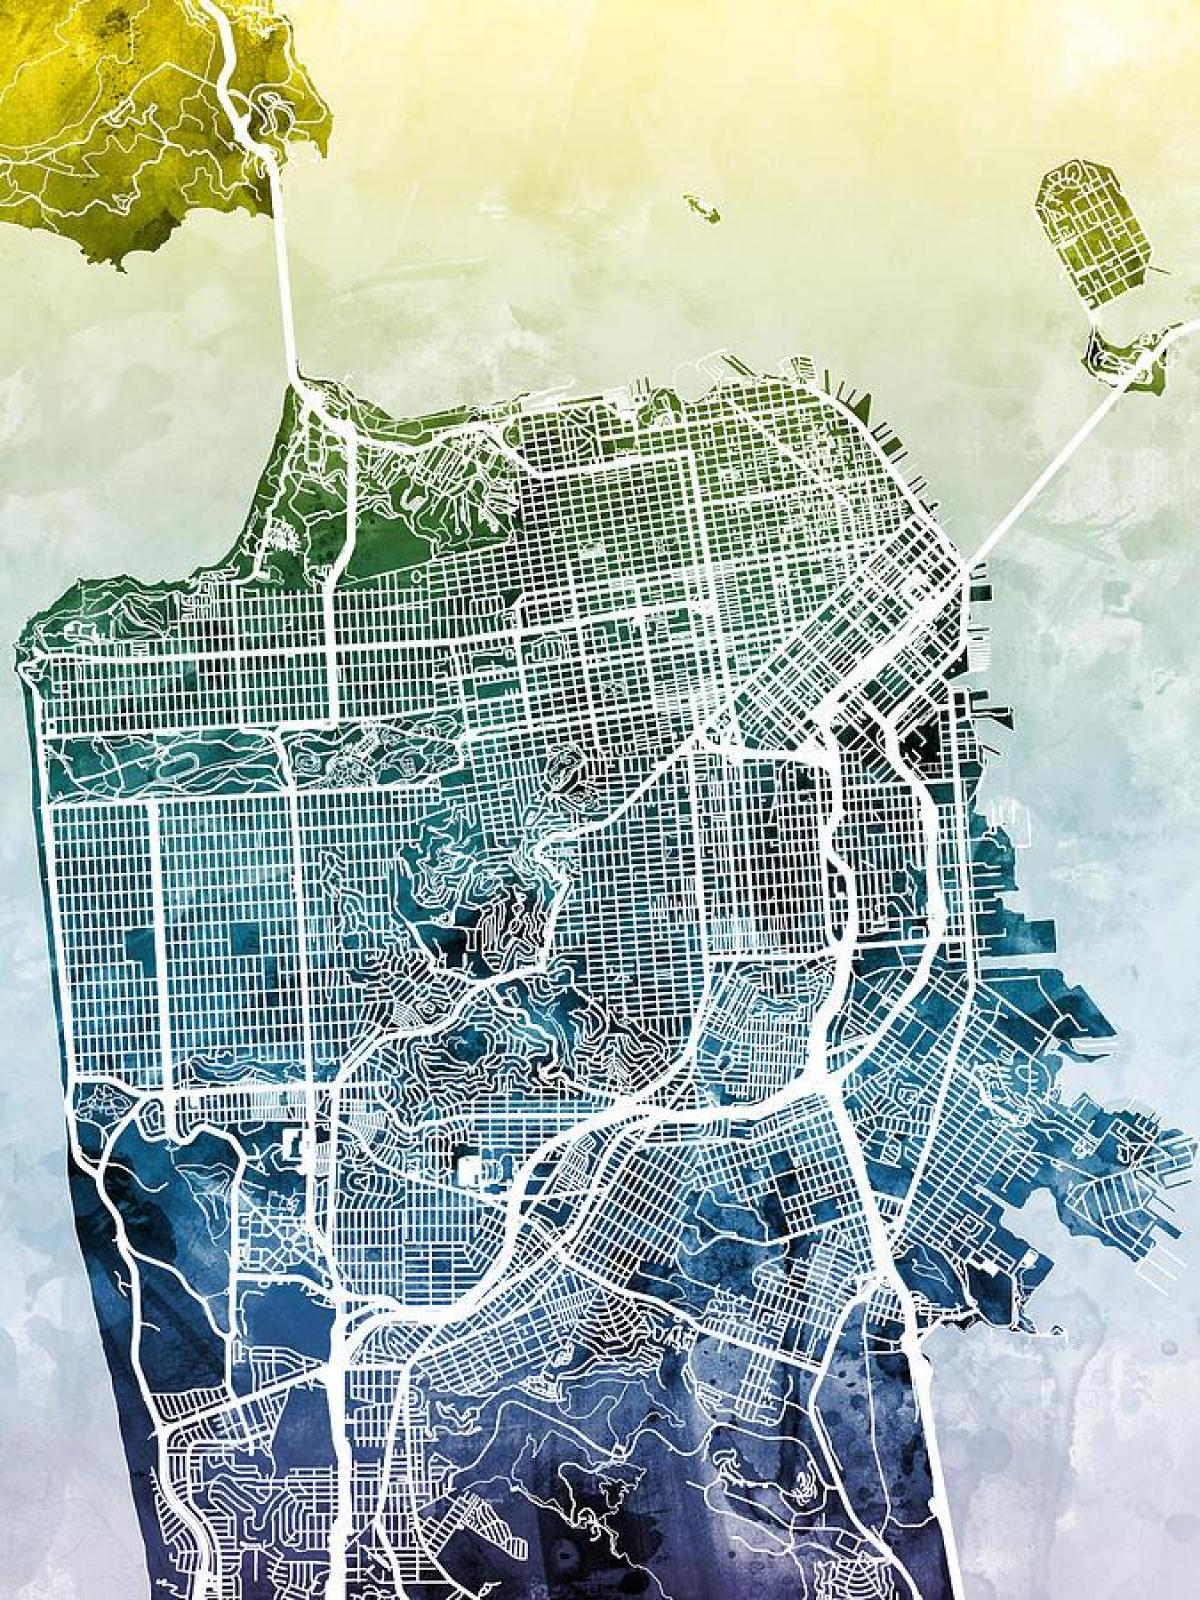 خريطة مدينة سان فرانسيسكو الفن